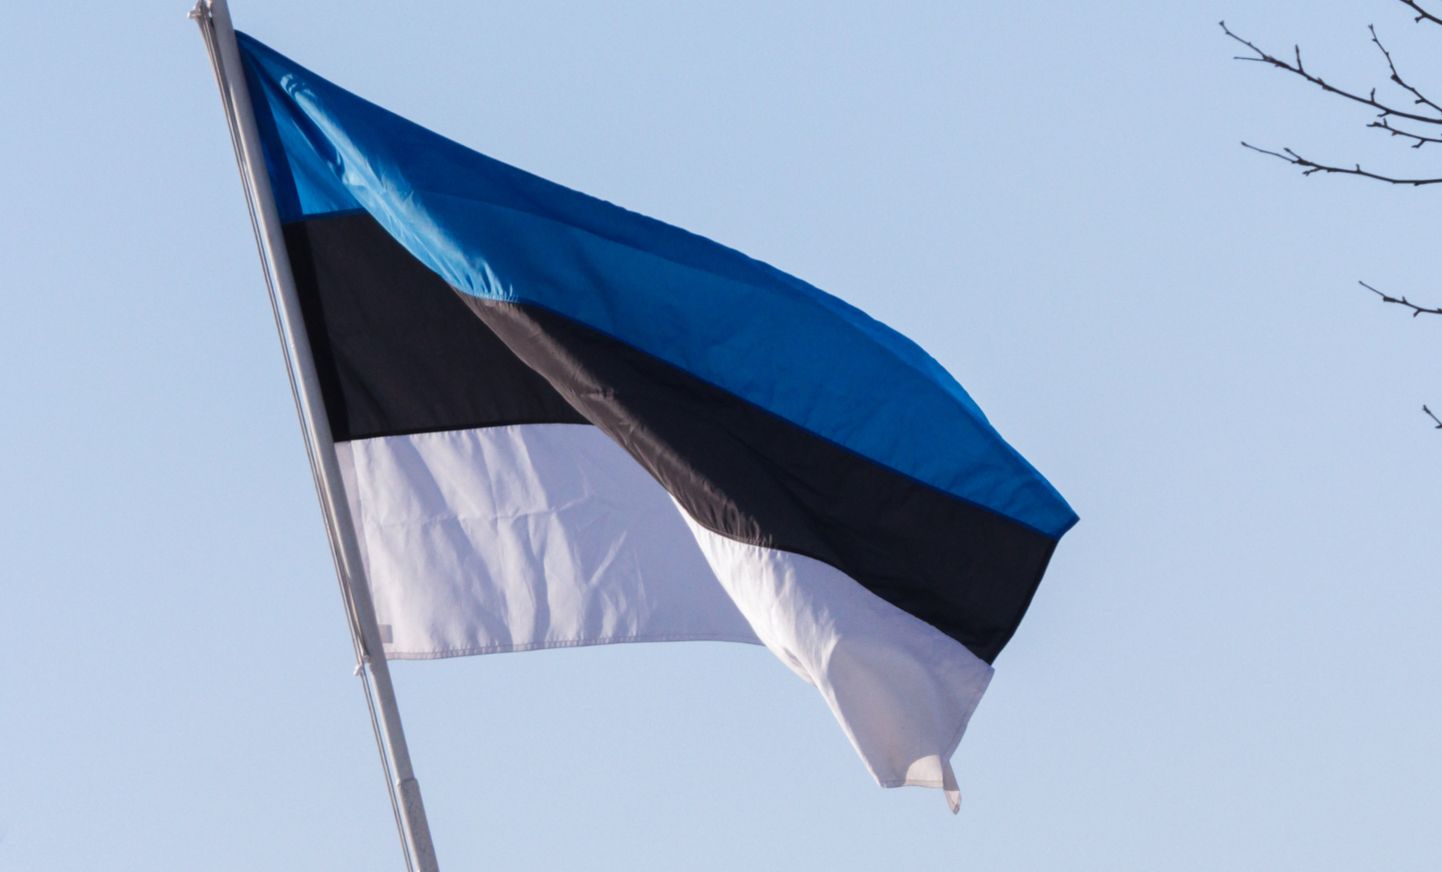 Valga
Eesti lipp. Eesti riigilipp, sinimustvalge.
Foto: Arvo Meeks/Valgamaalane